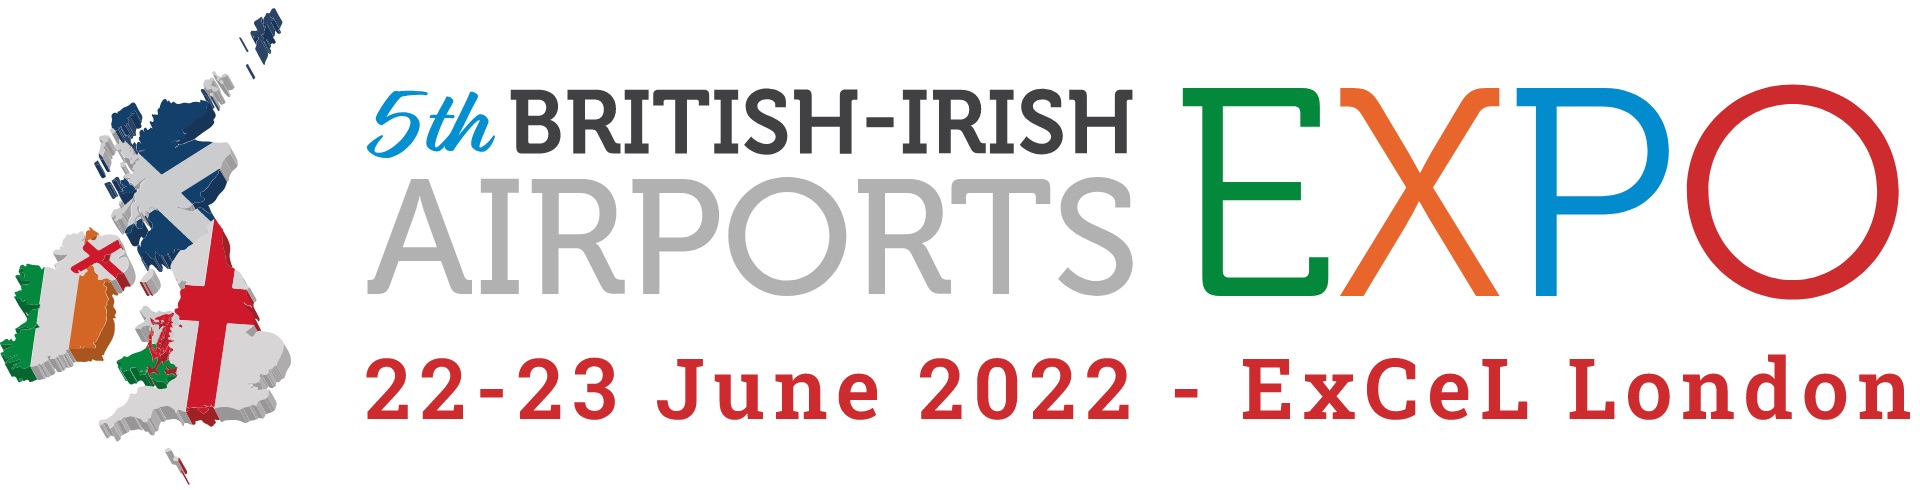 The British-Irish Airports EXPO 2022